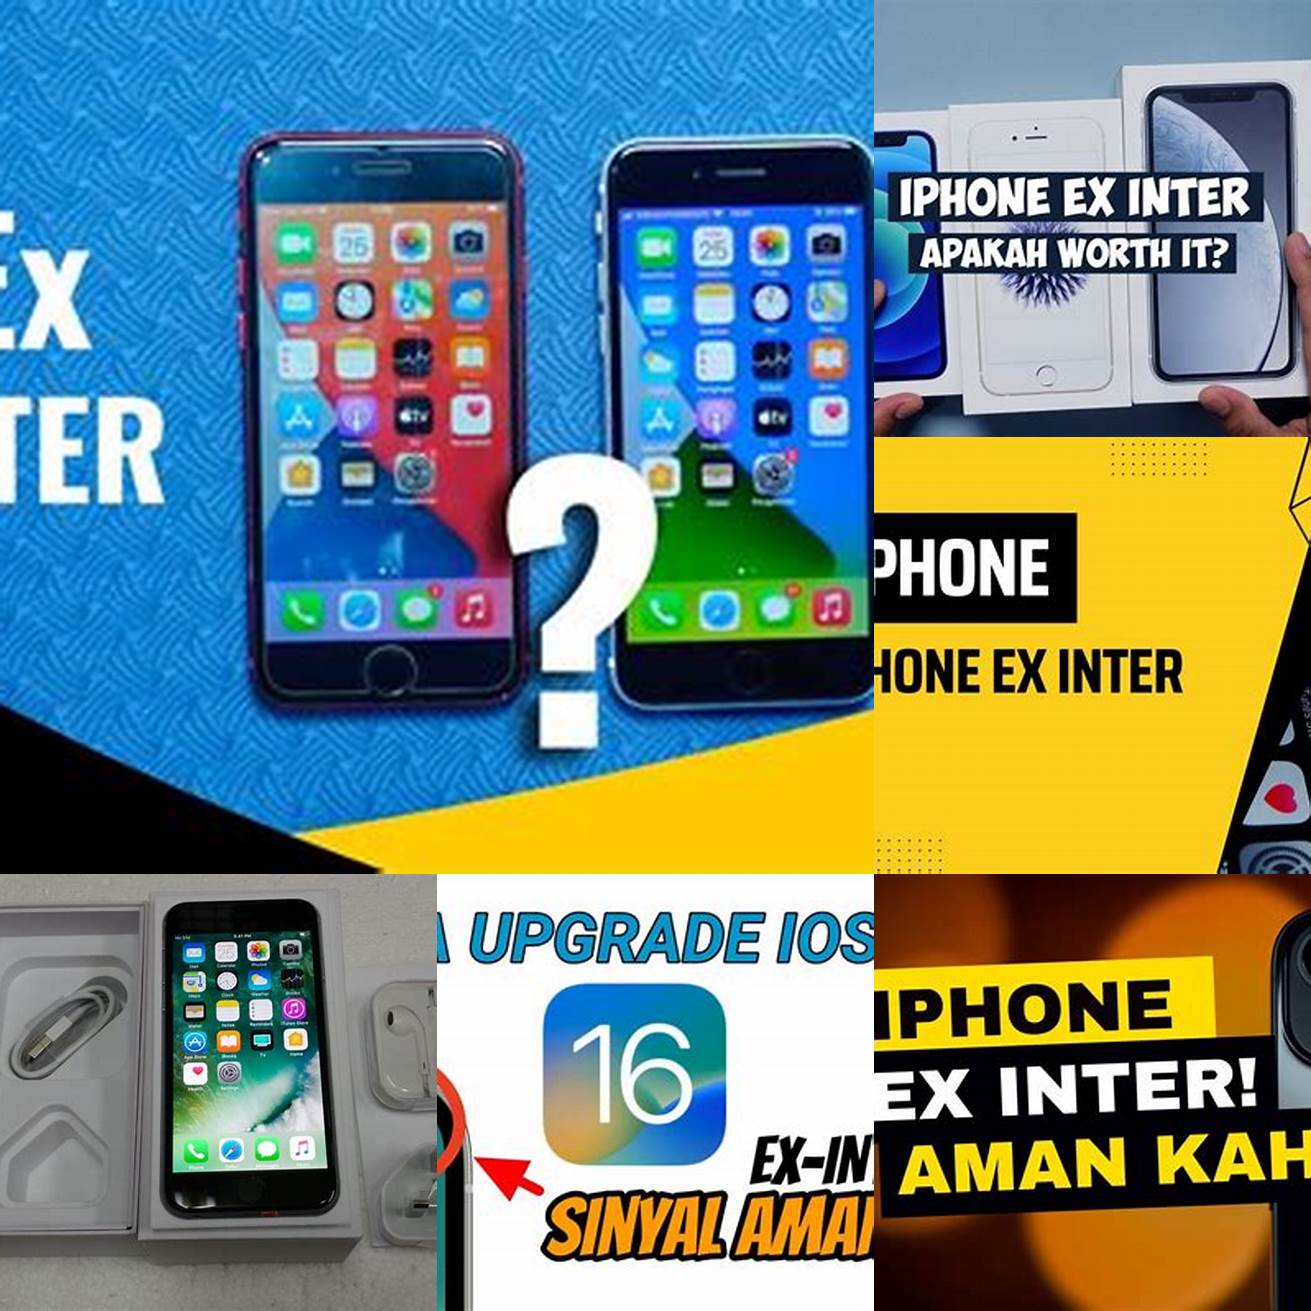 iPhone Ex Inter